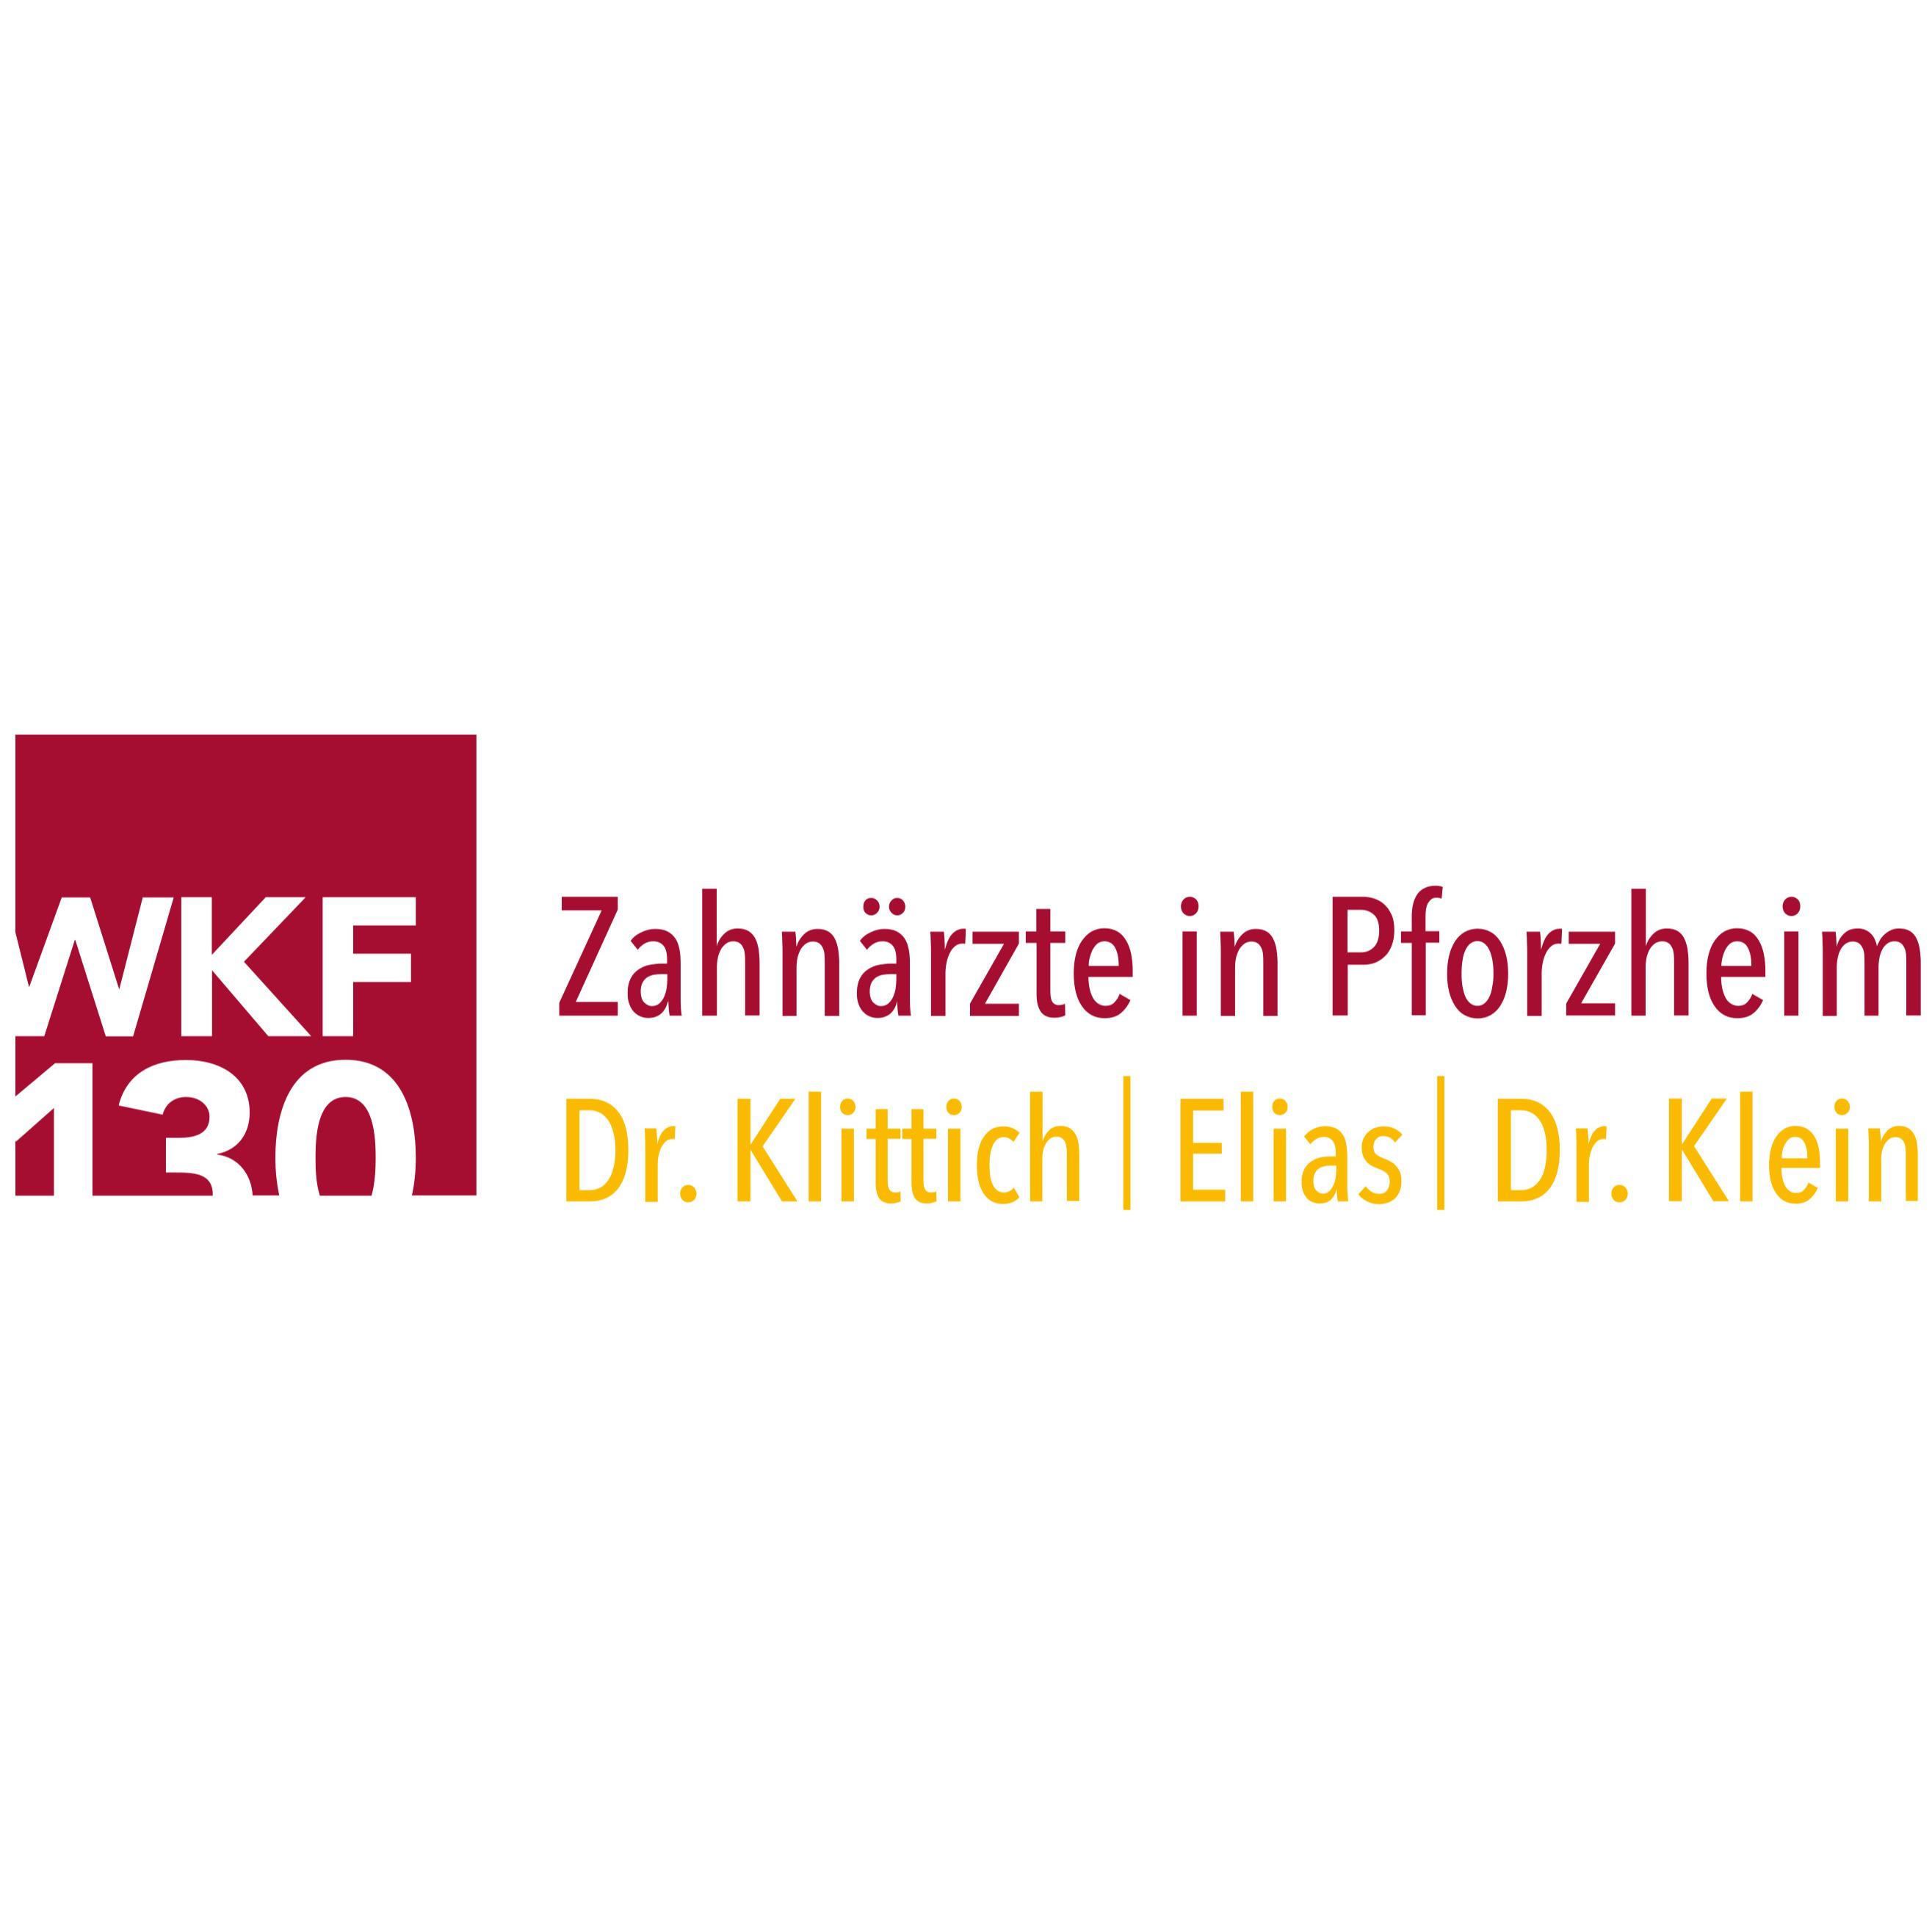 Logo - Zahnärzte in Pforzheim - WKF 130